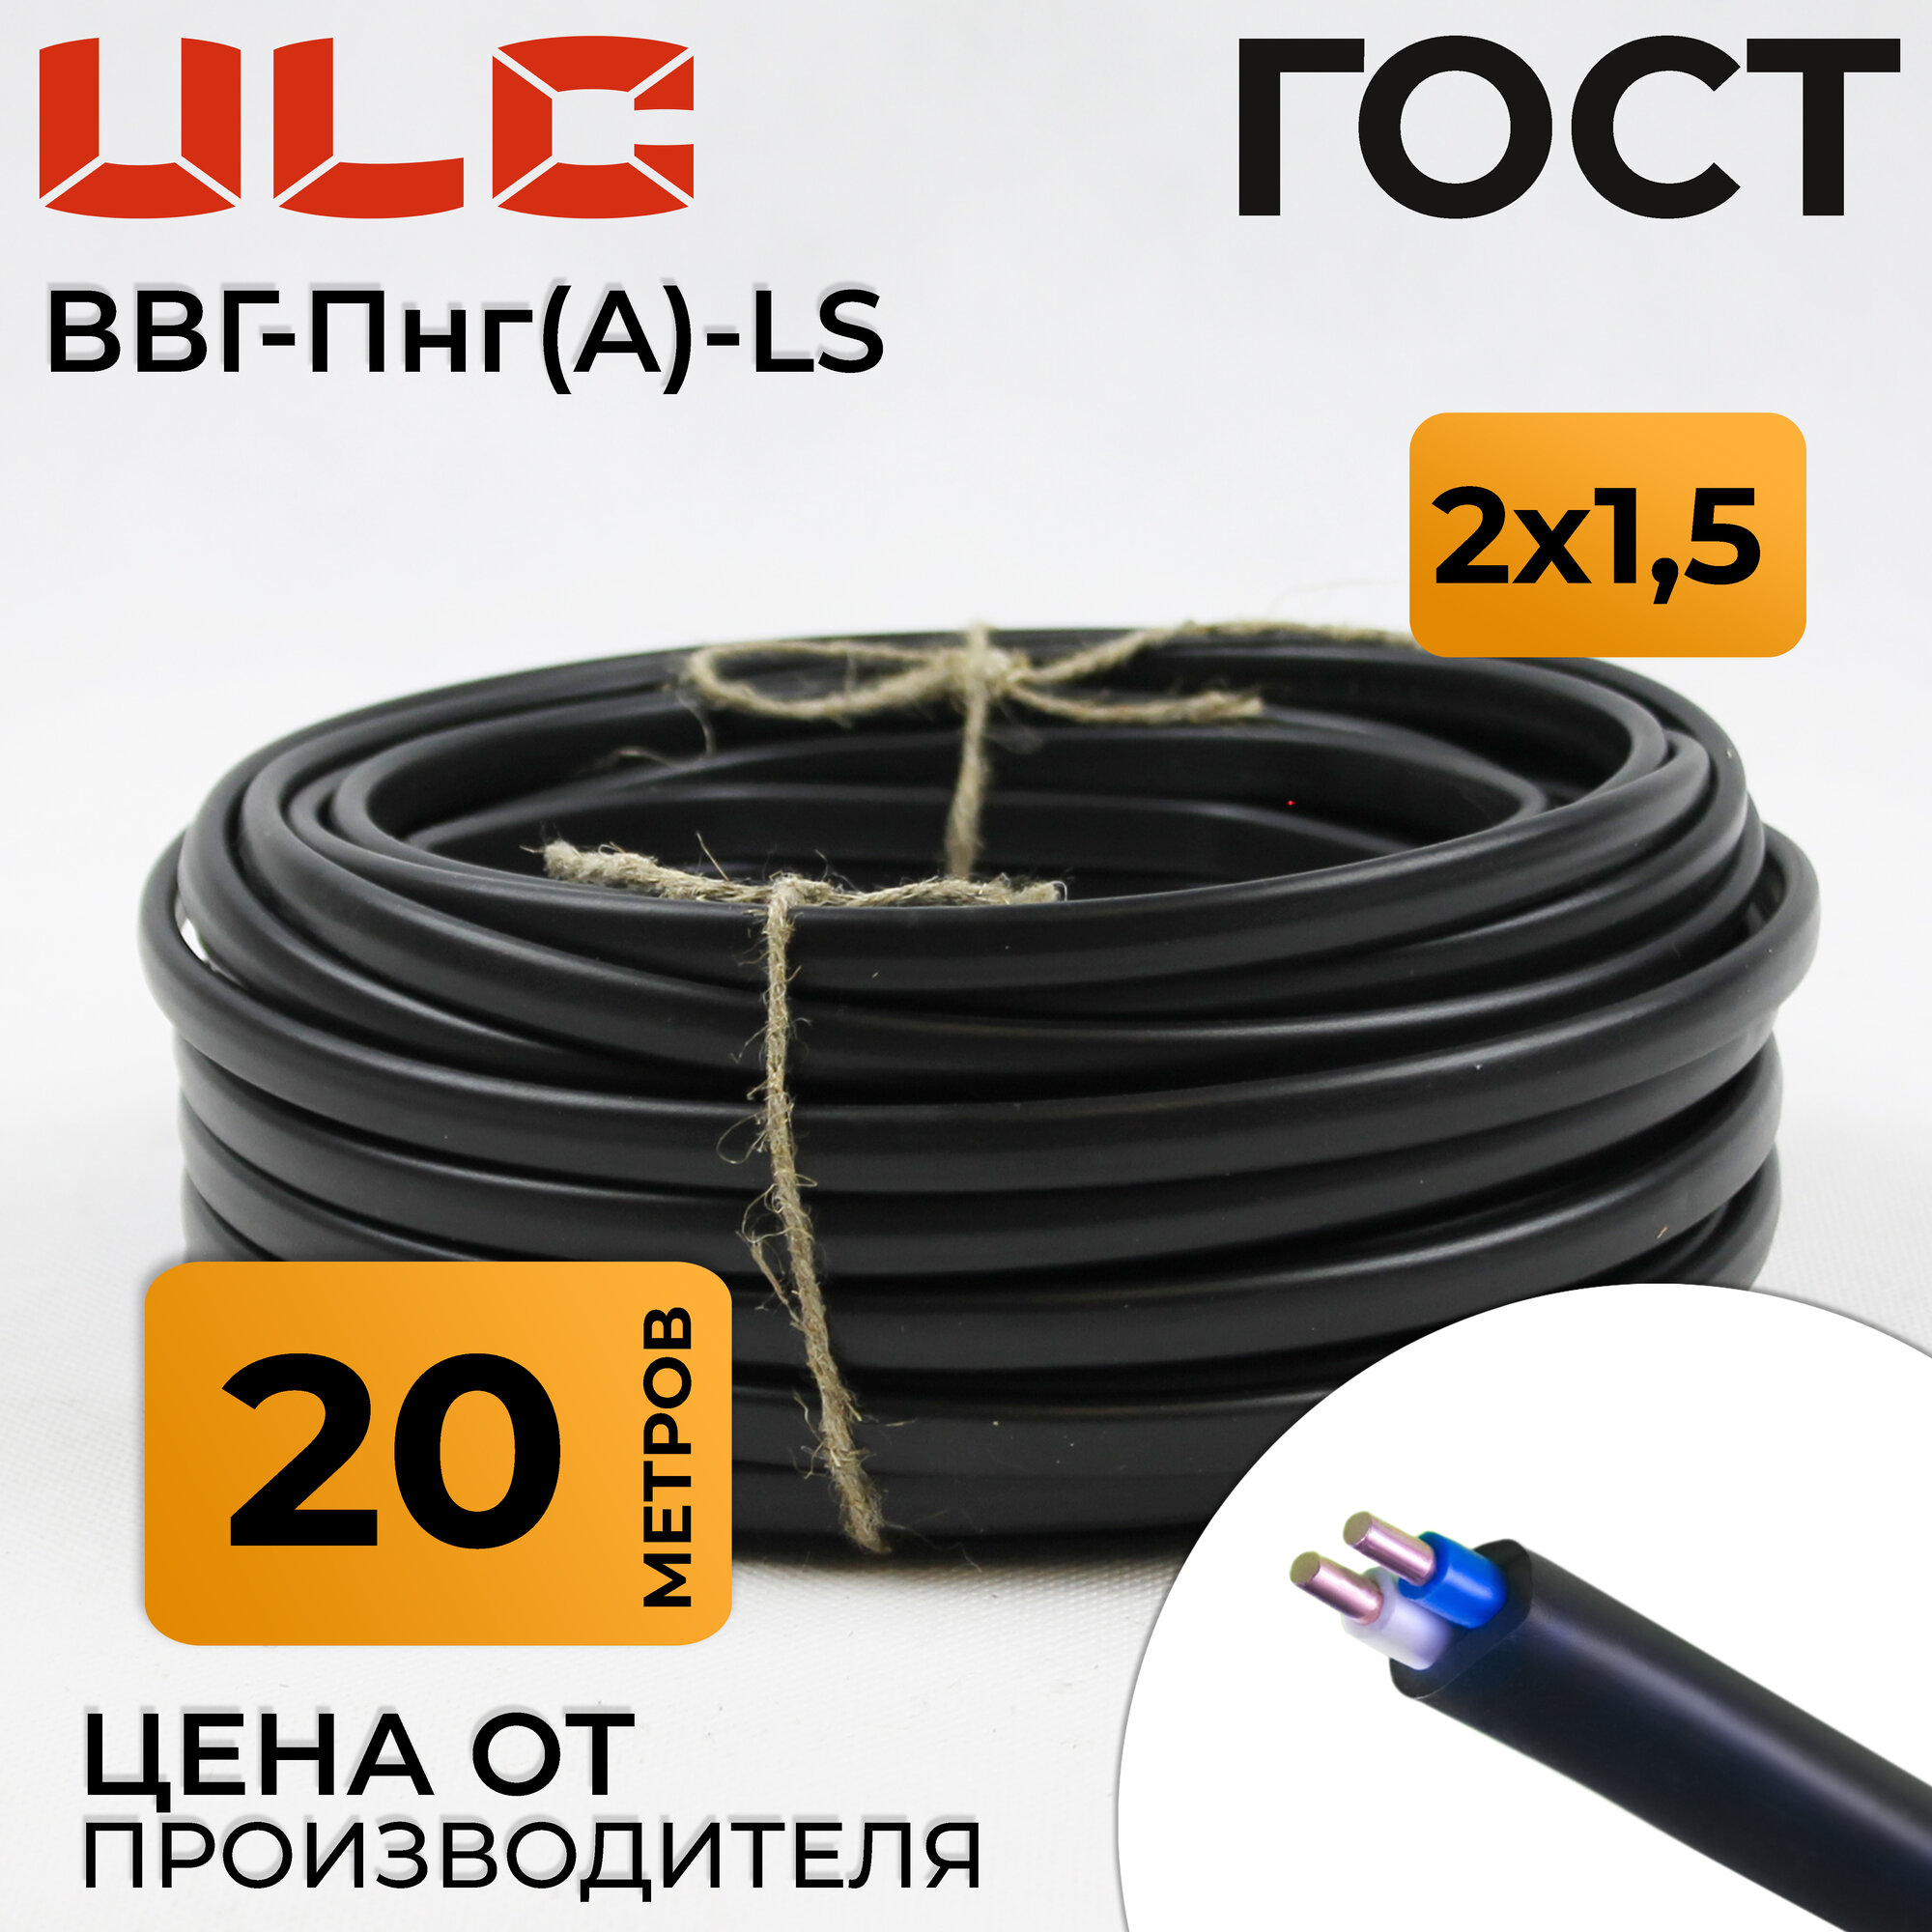 кабель электрический ввг-пнг(а)-ls 2х1.5 (20м) черный, гост, ulc (orelcable) - фото №2